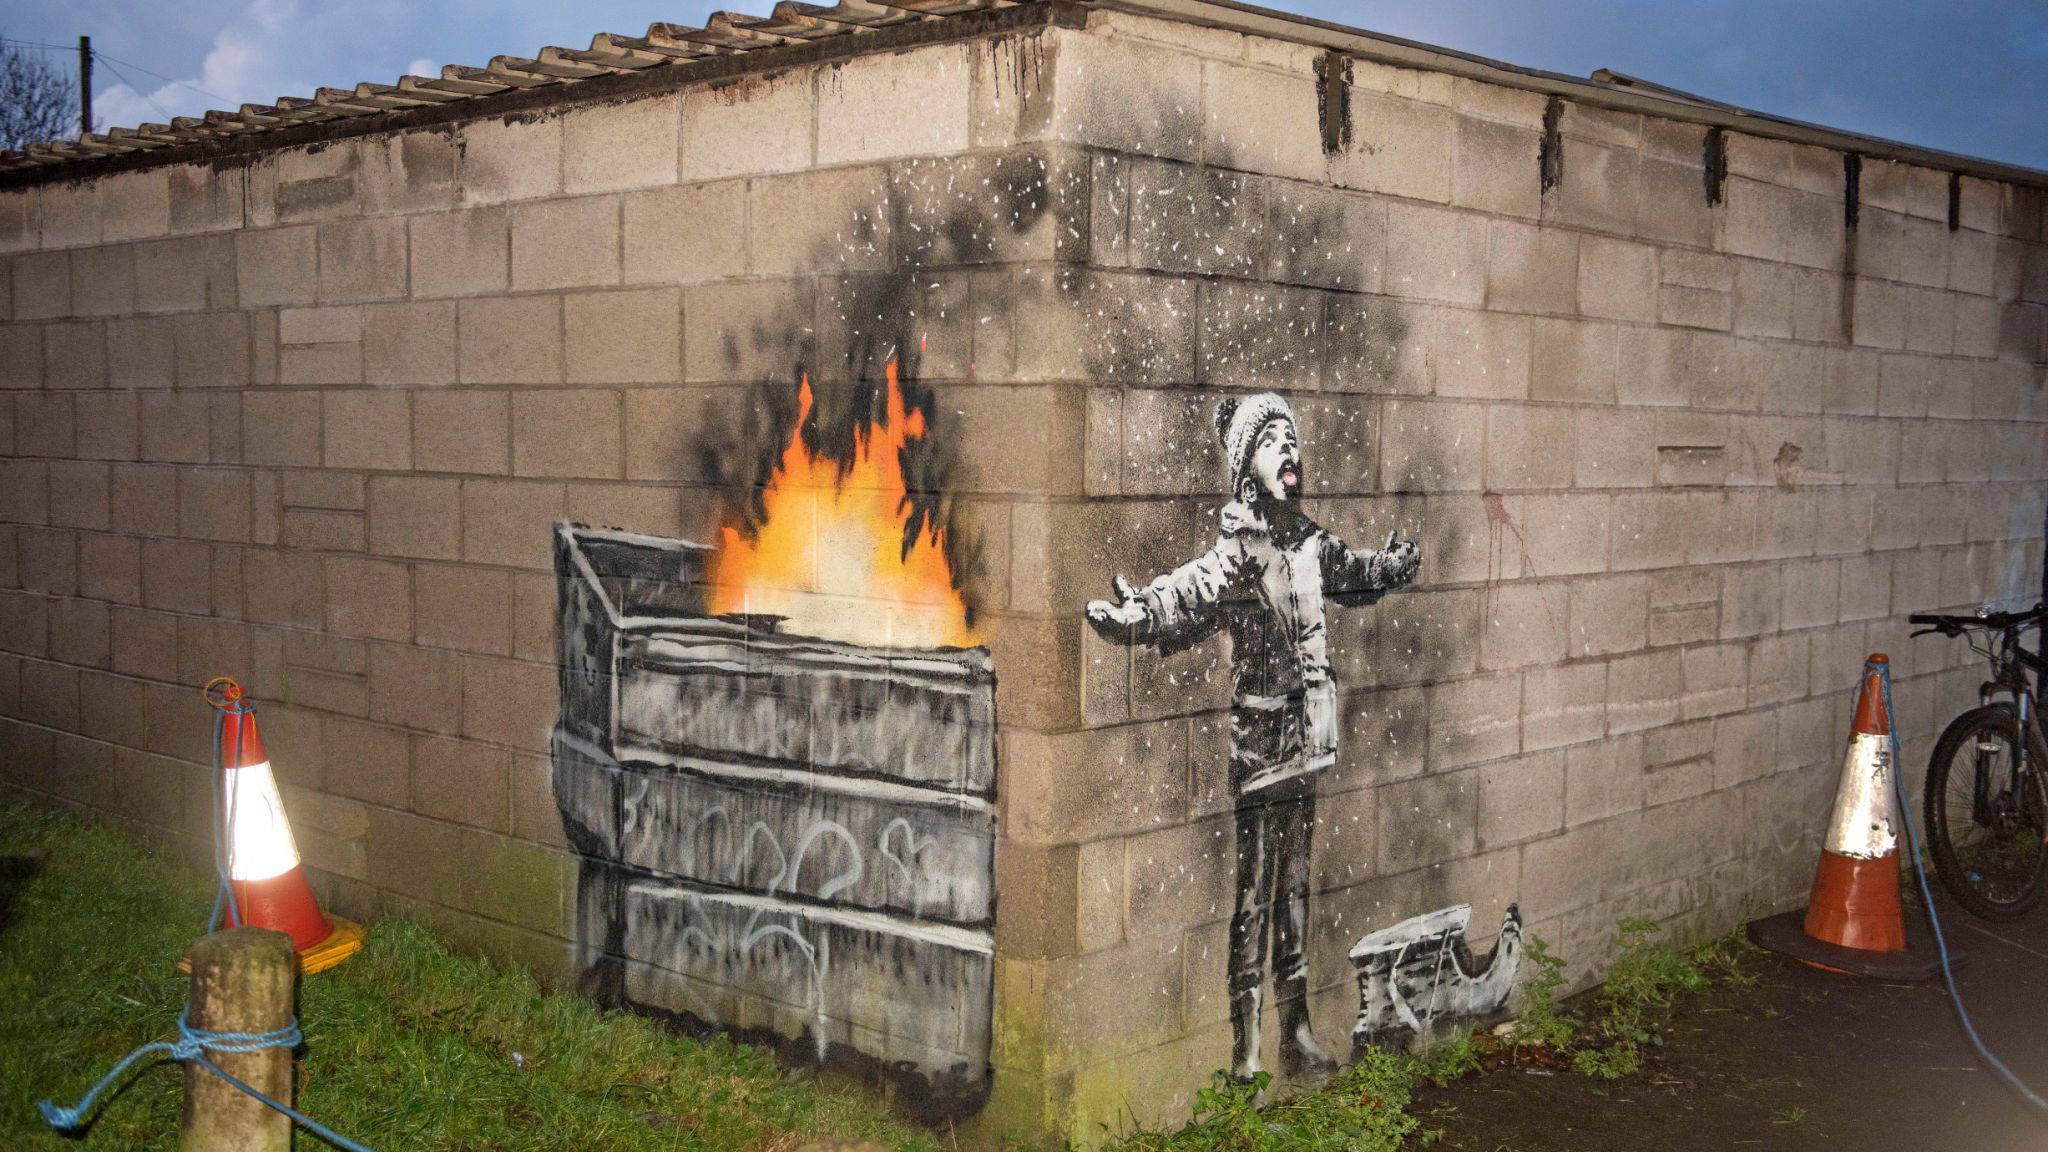 Banksy Art Banksy Art Banksy Graffiti Graffiti - Bank2home.com